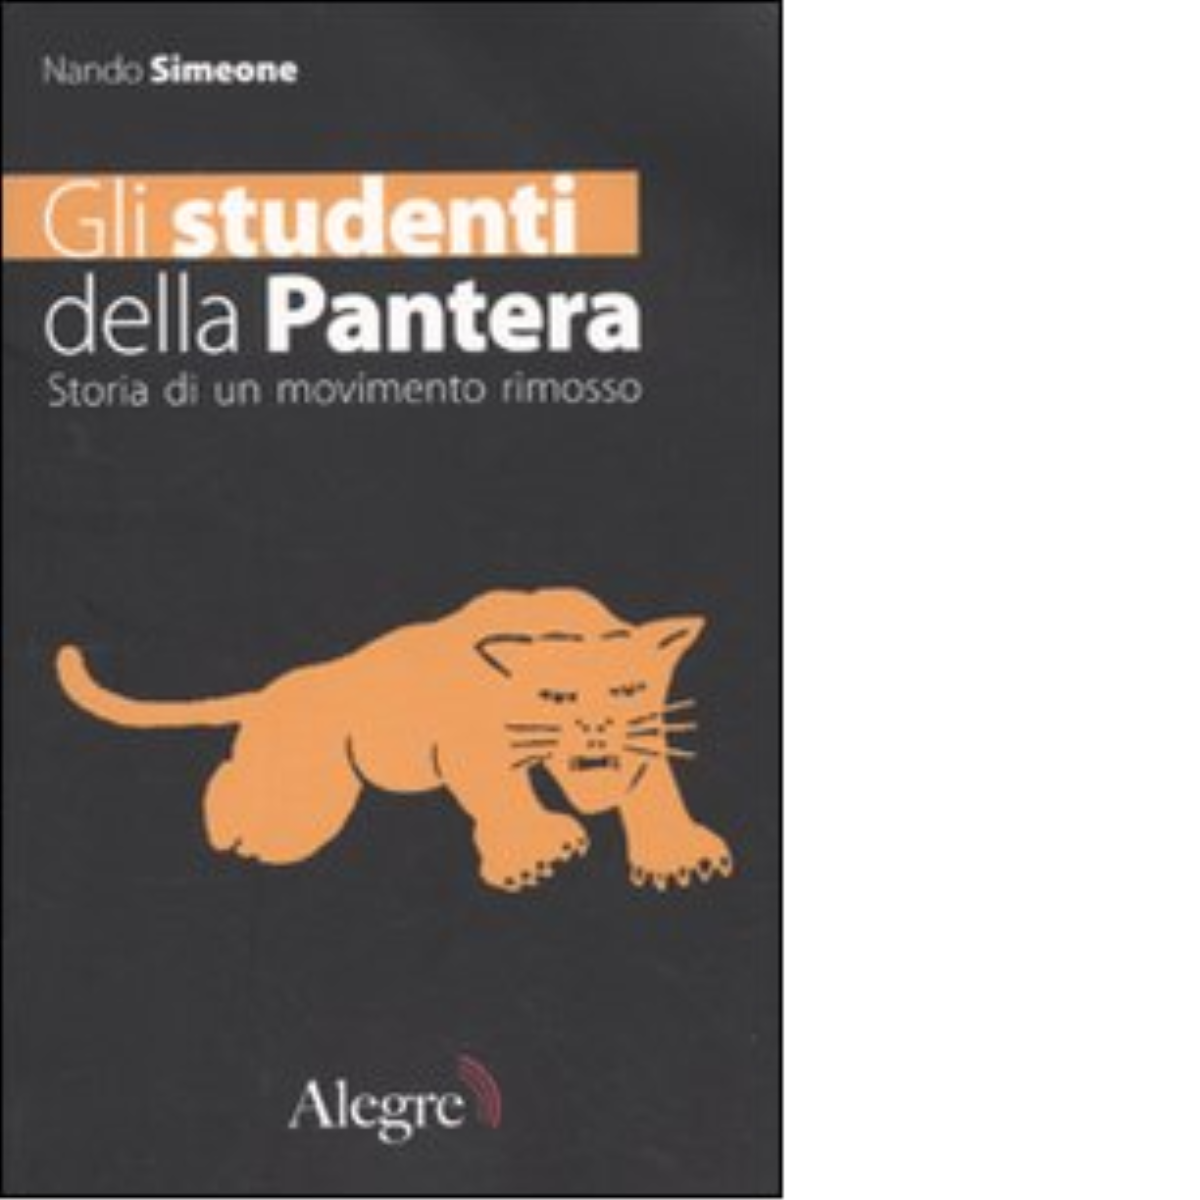 GLI STUDENTI DELLA PANTERA di NANDO SIMEONE - edizioni alegre, 2006 libro usato